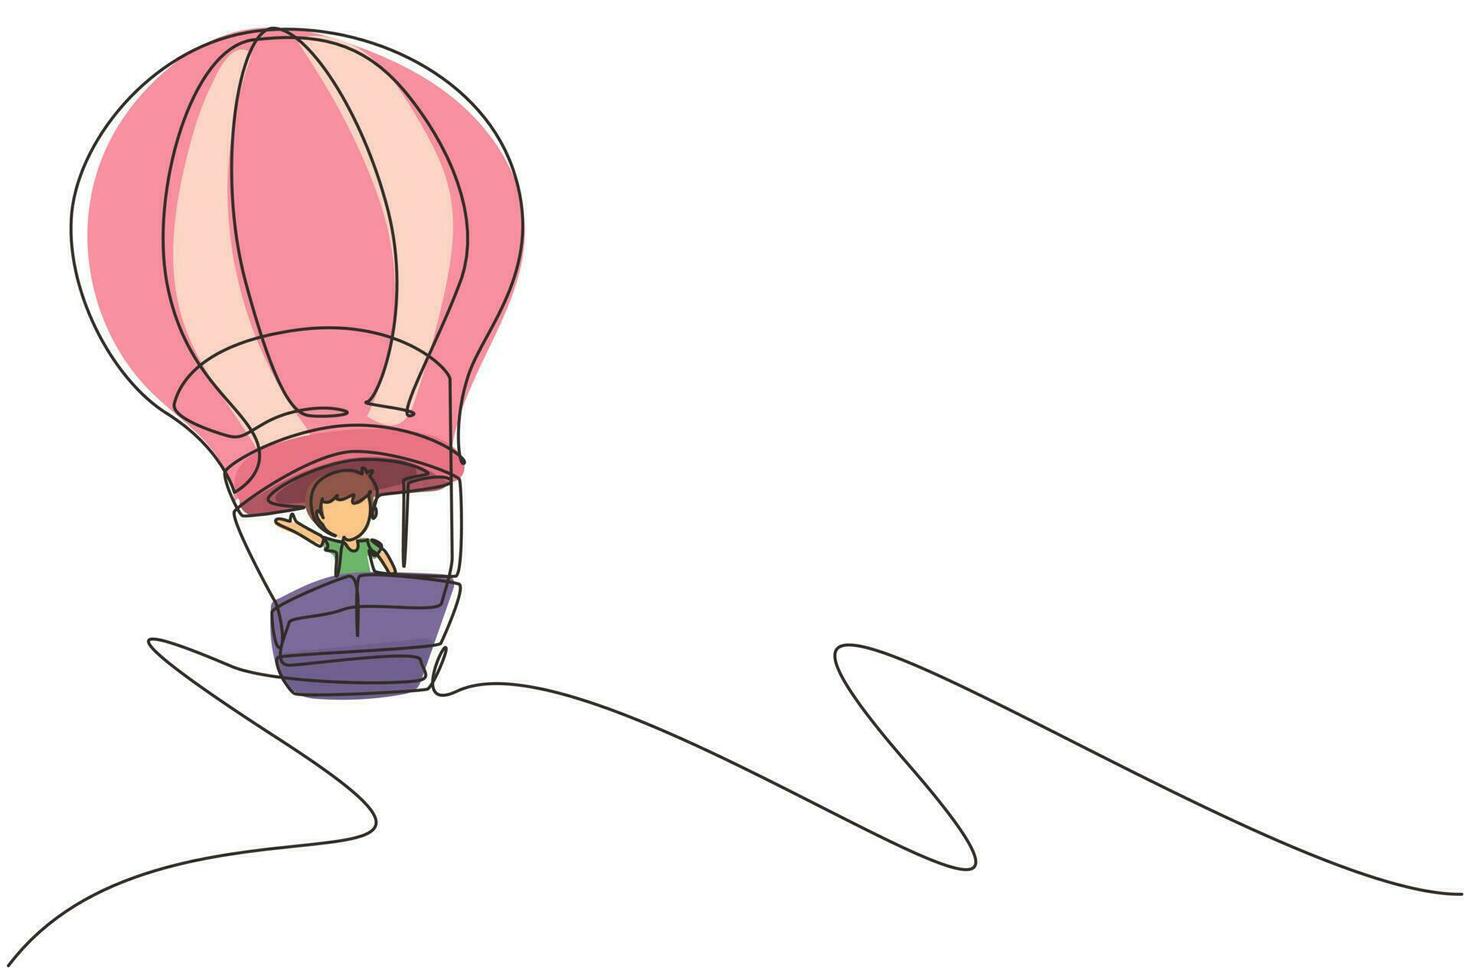 único desenho de uma linha garotinho aeronauta em balão de ar quente no céu. crianças felizes andando de balão de ar quente. crianças na aventura de balão de ar quente. ilustração em vetor gráfico de desenho de linha contínua